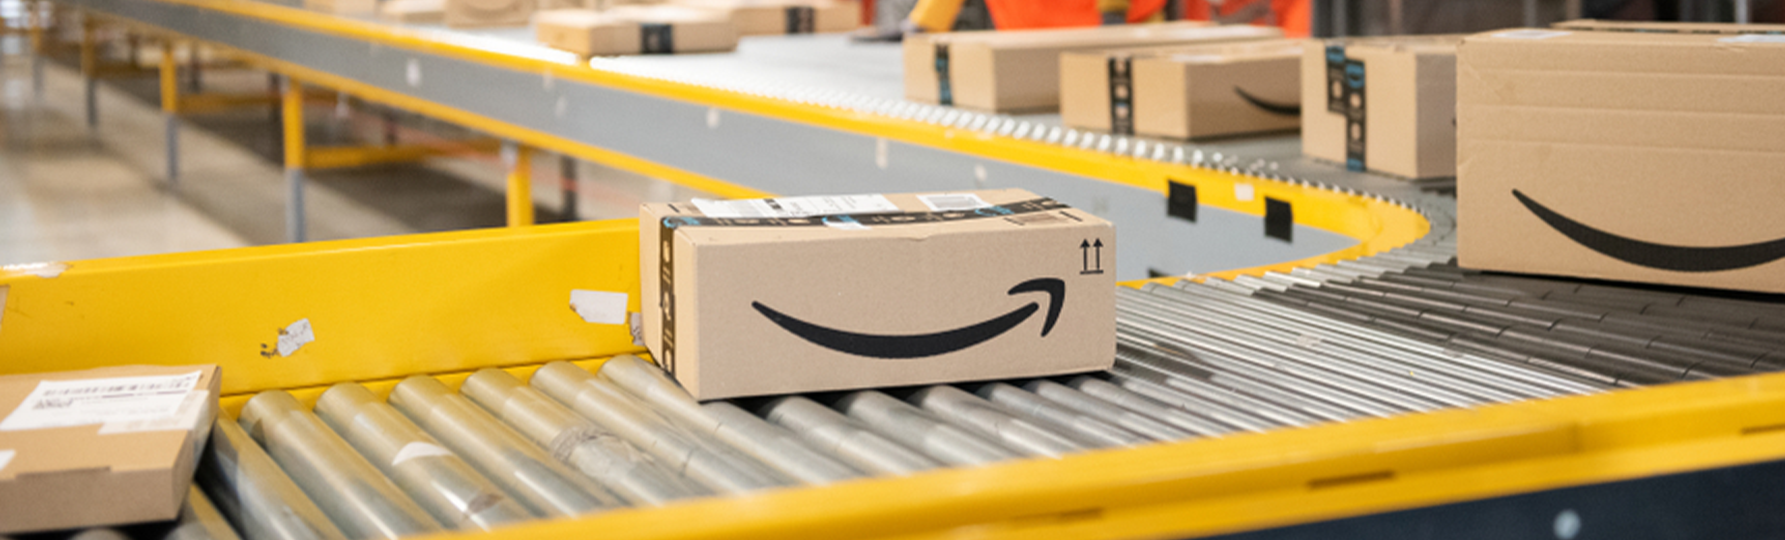 Amazon Warehouse Pictures